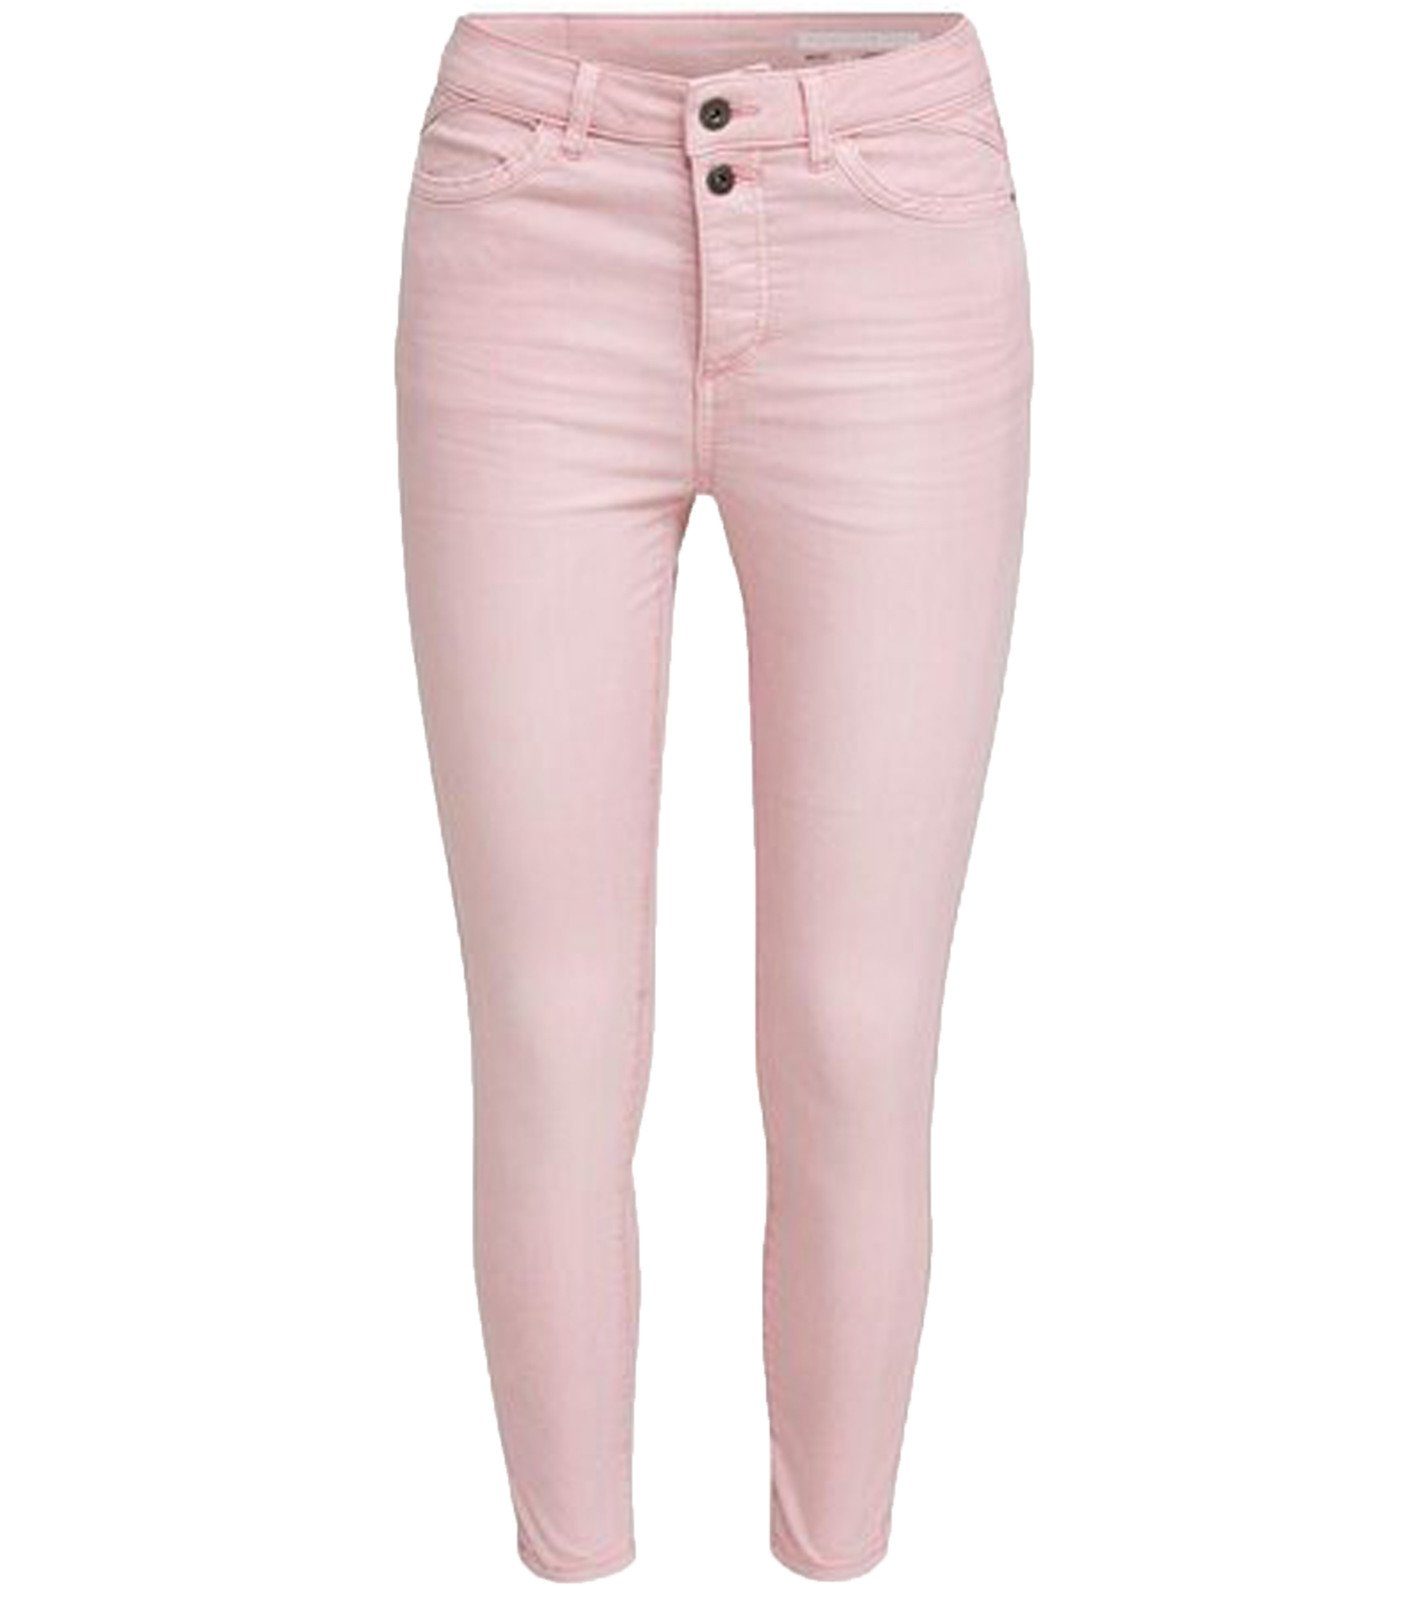 Esprit Regular-fit-Jeans »EDC by Esprit Ankle-Jeans sommerliche Damen Denim- Hose High-Waist Freizeit-Jeans Rosa« online kaufen | OTTO